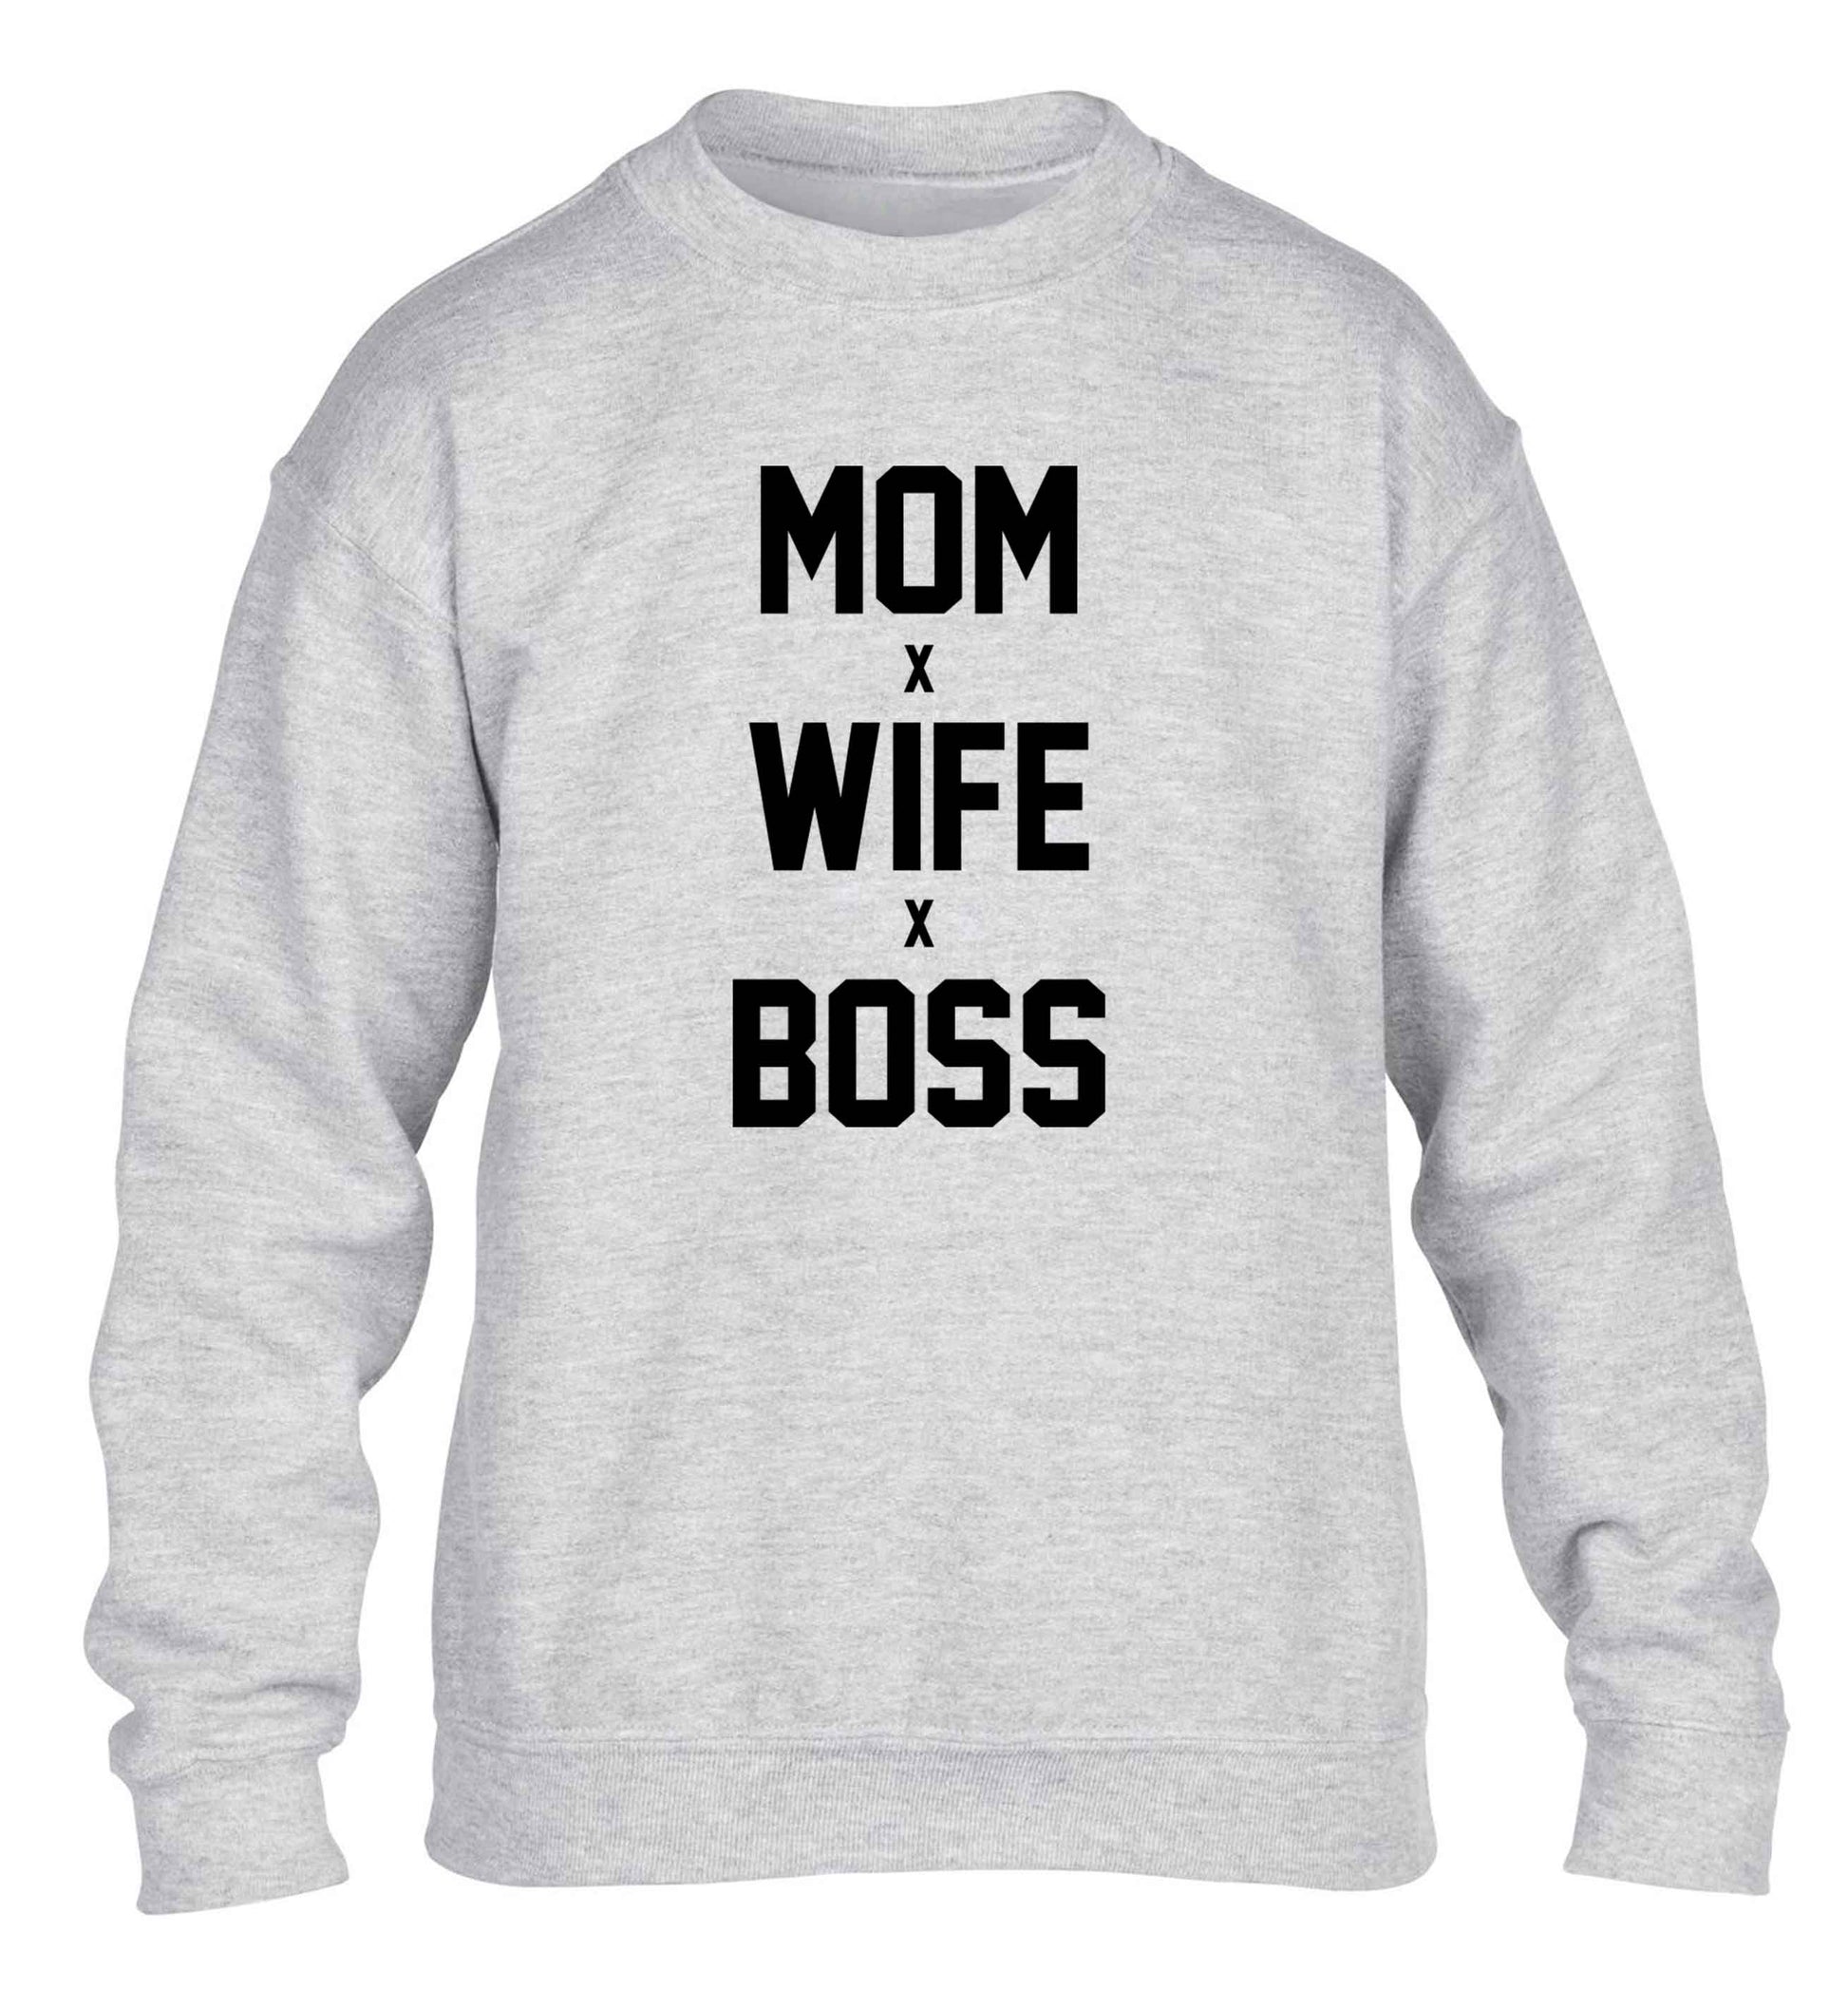 Mum wife boss children's grey sweater 12-13 Years